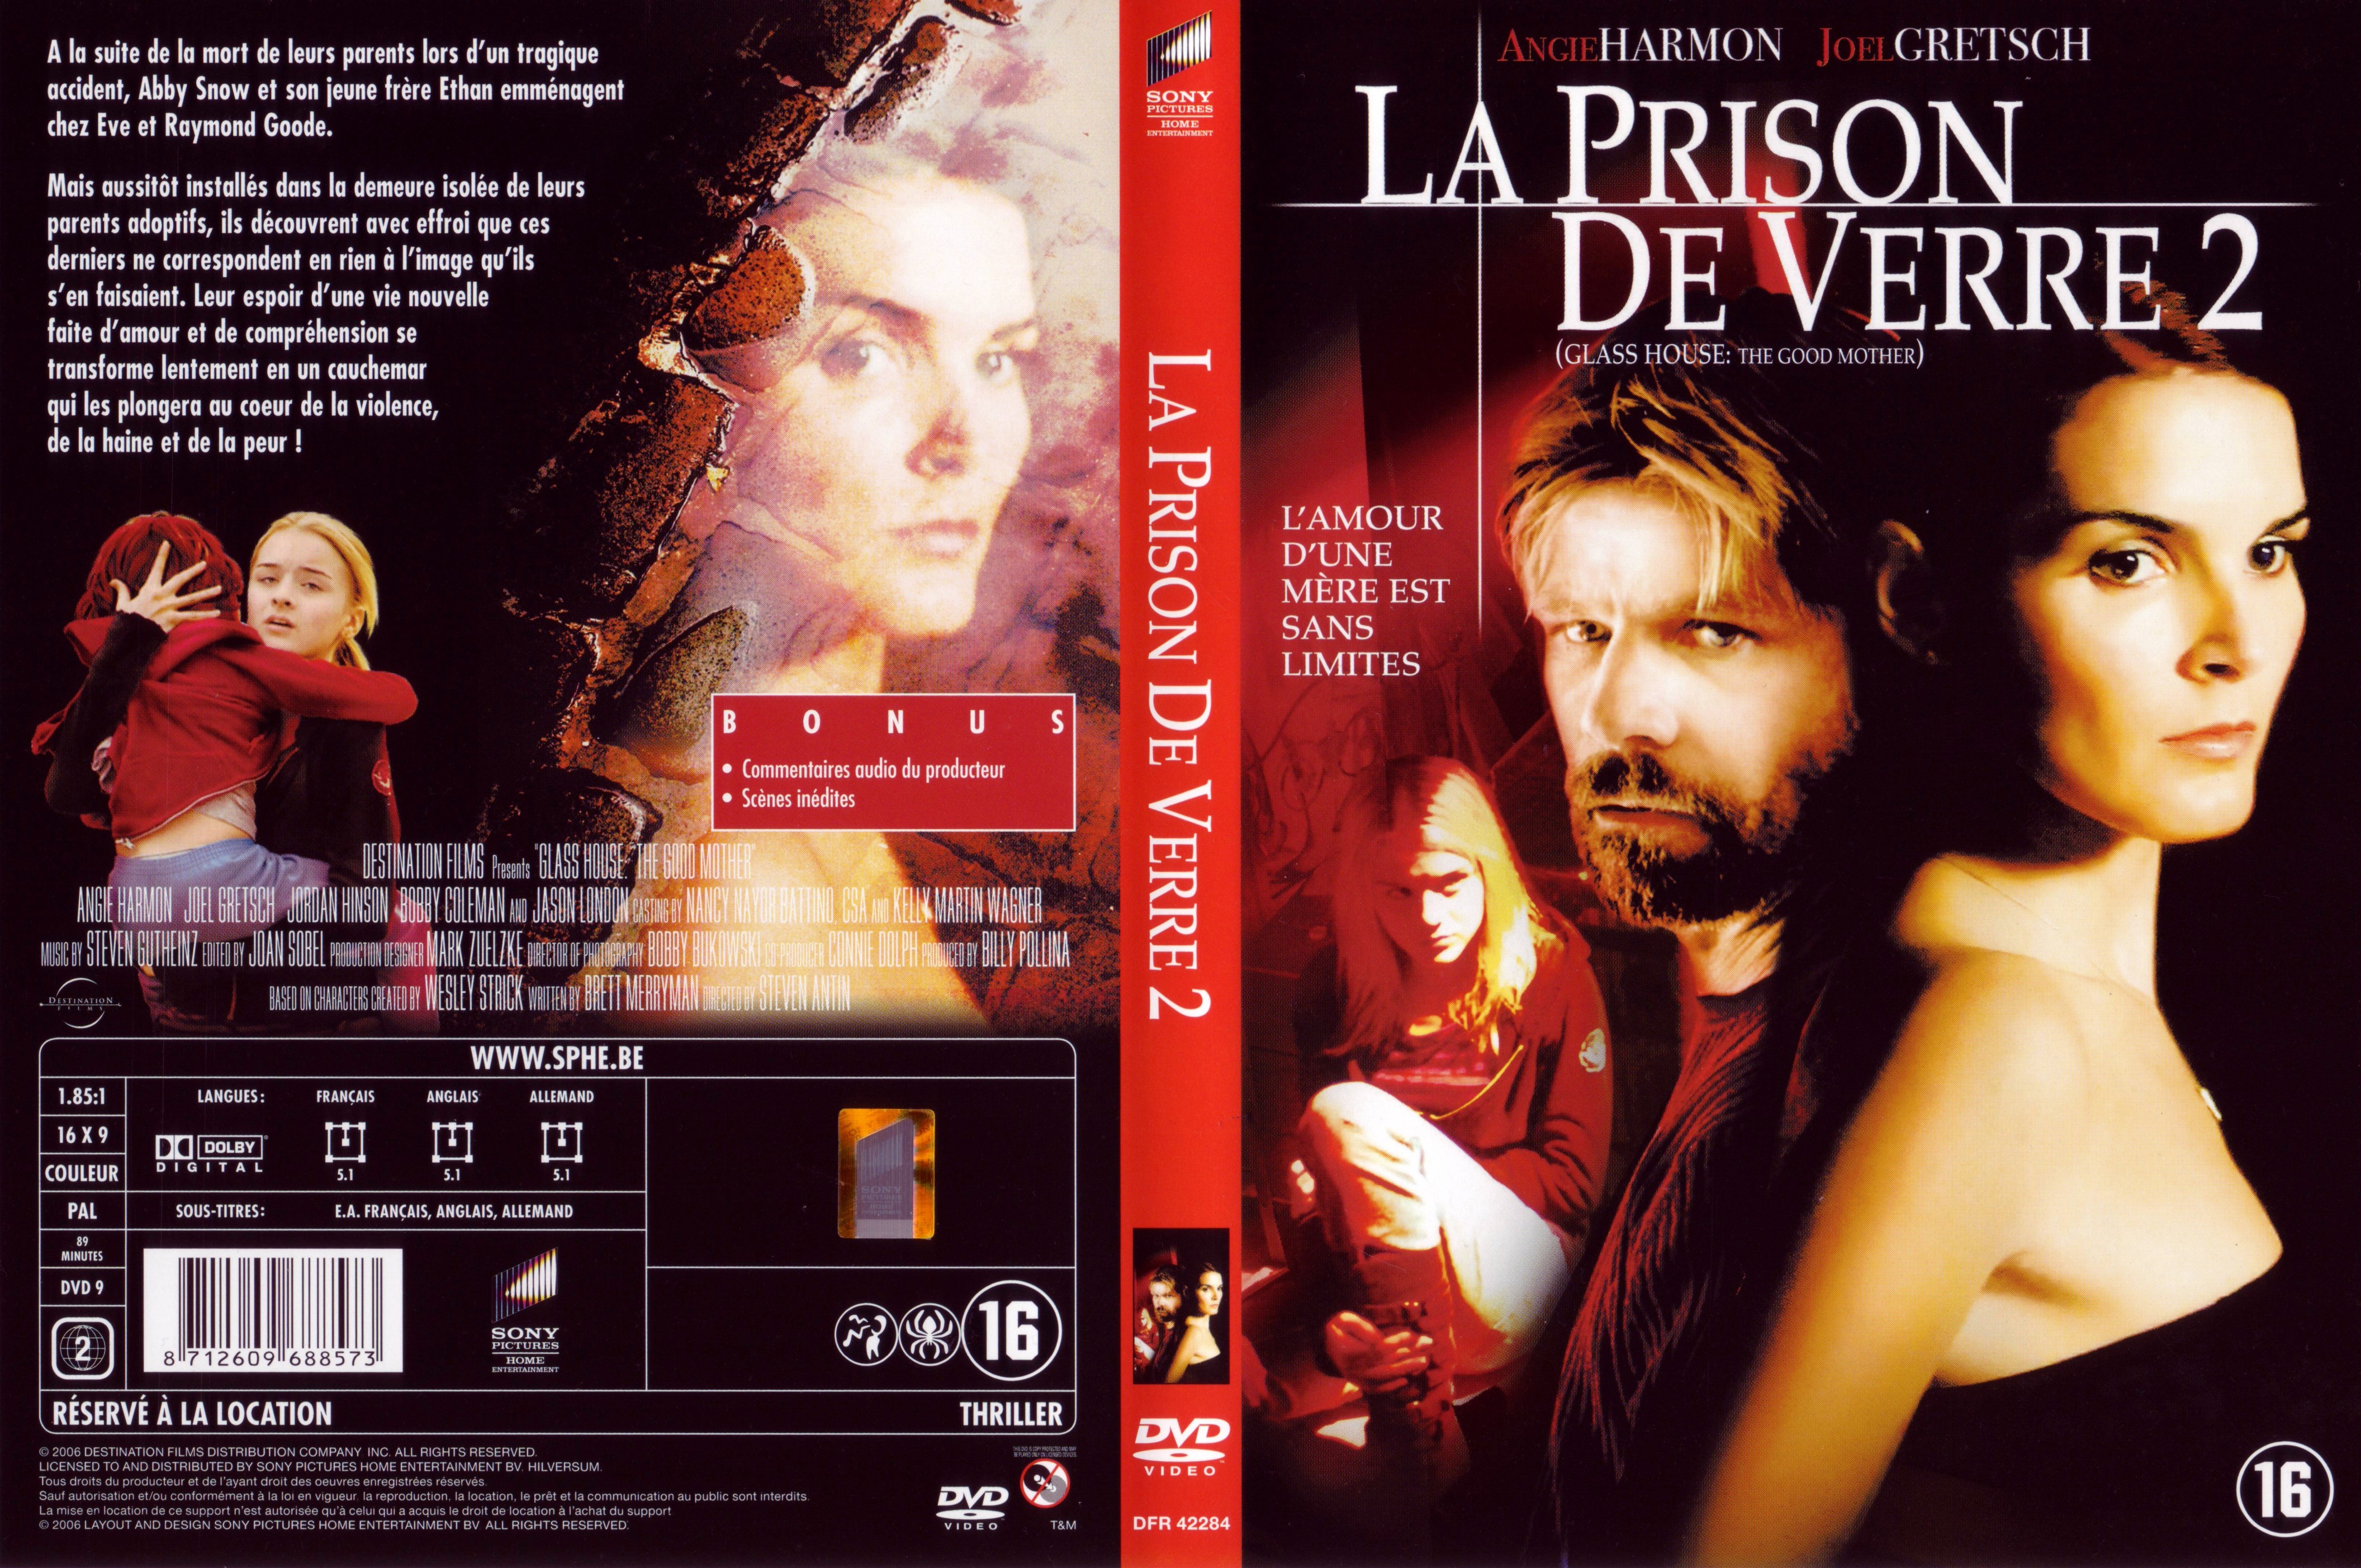 Jaquette DVD La prison de verre 2 v2